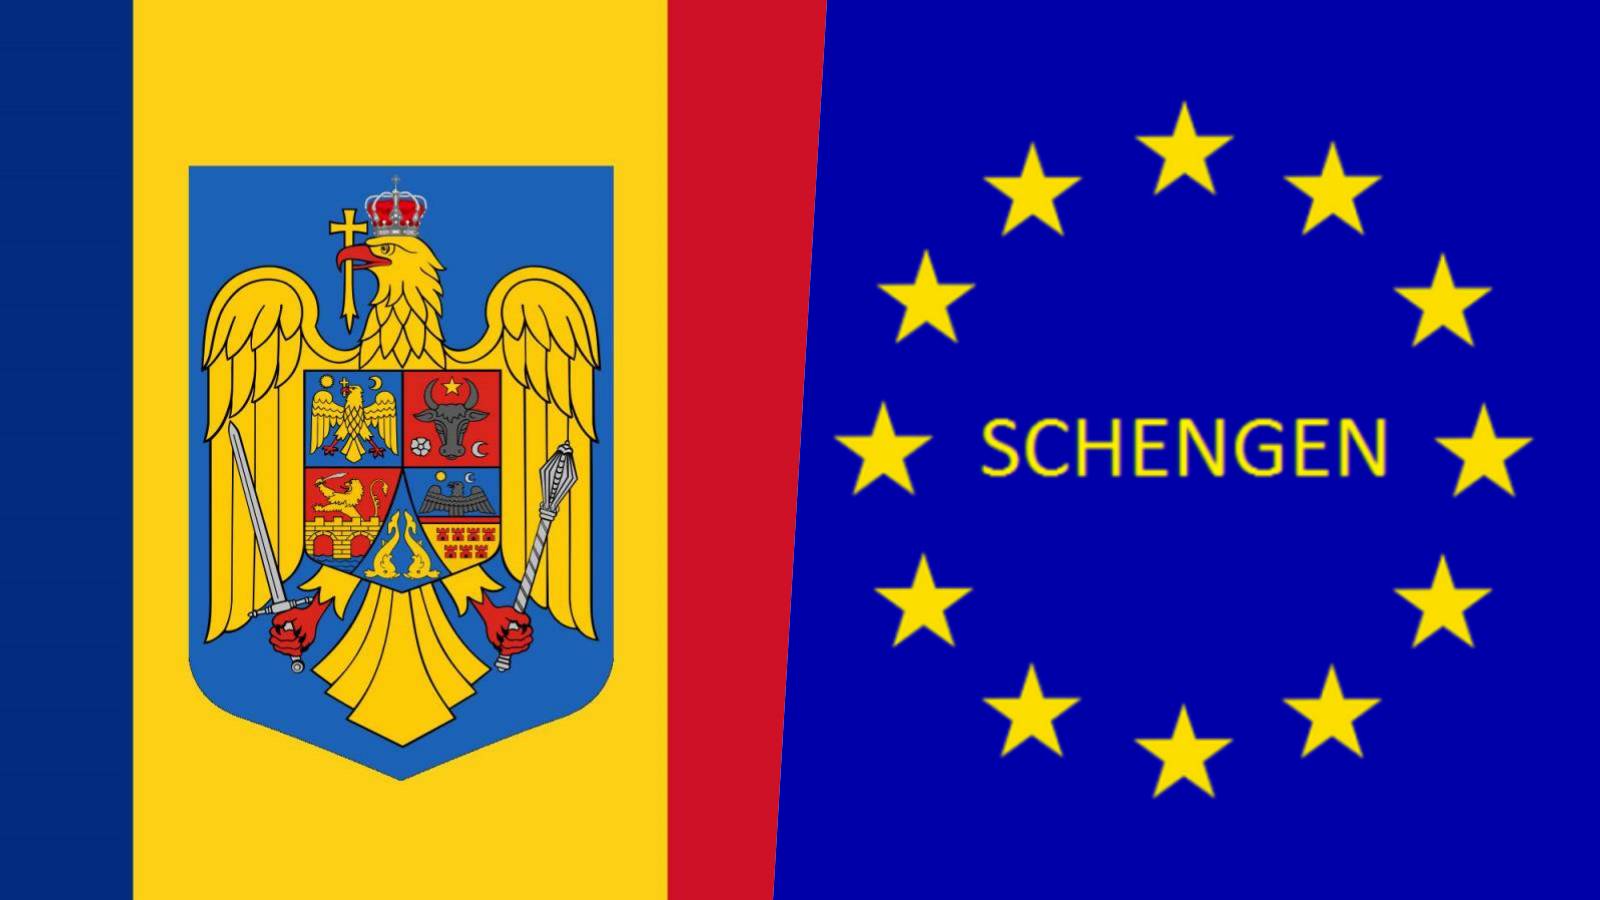 Romanian viralliset päätökset VIIMEINEN TOUKOKUU Schengenin liittyminen